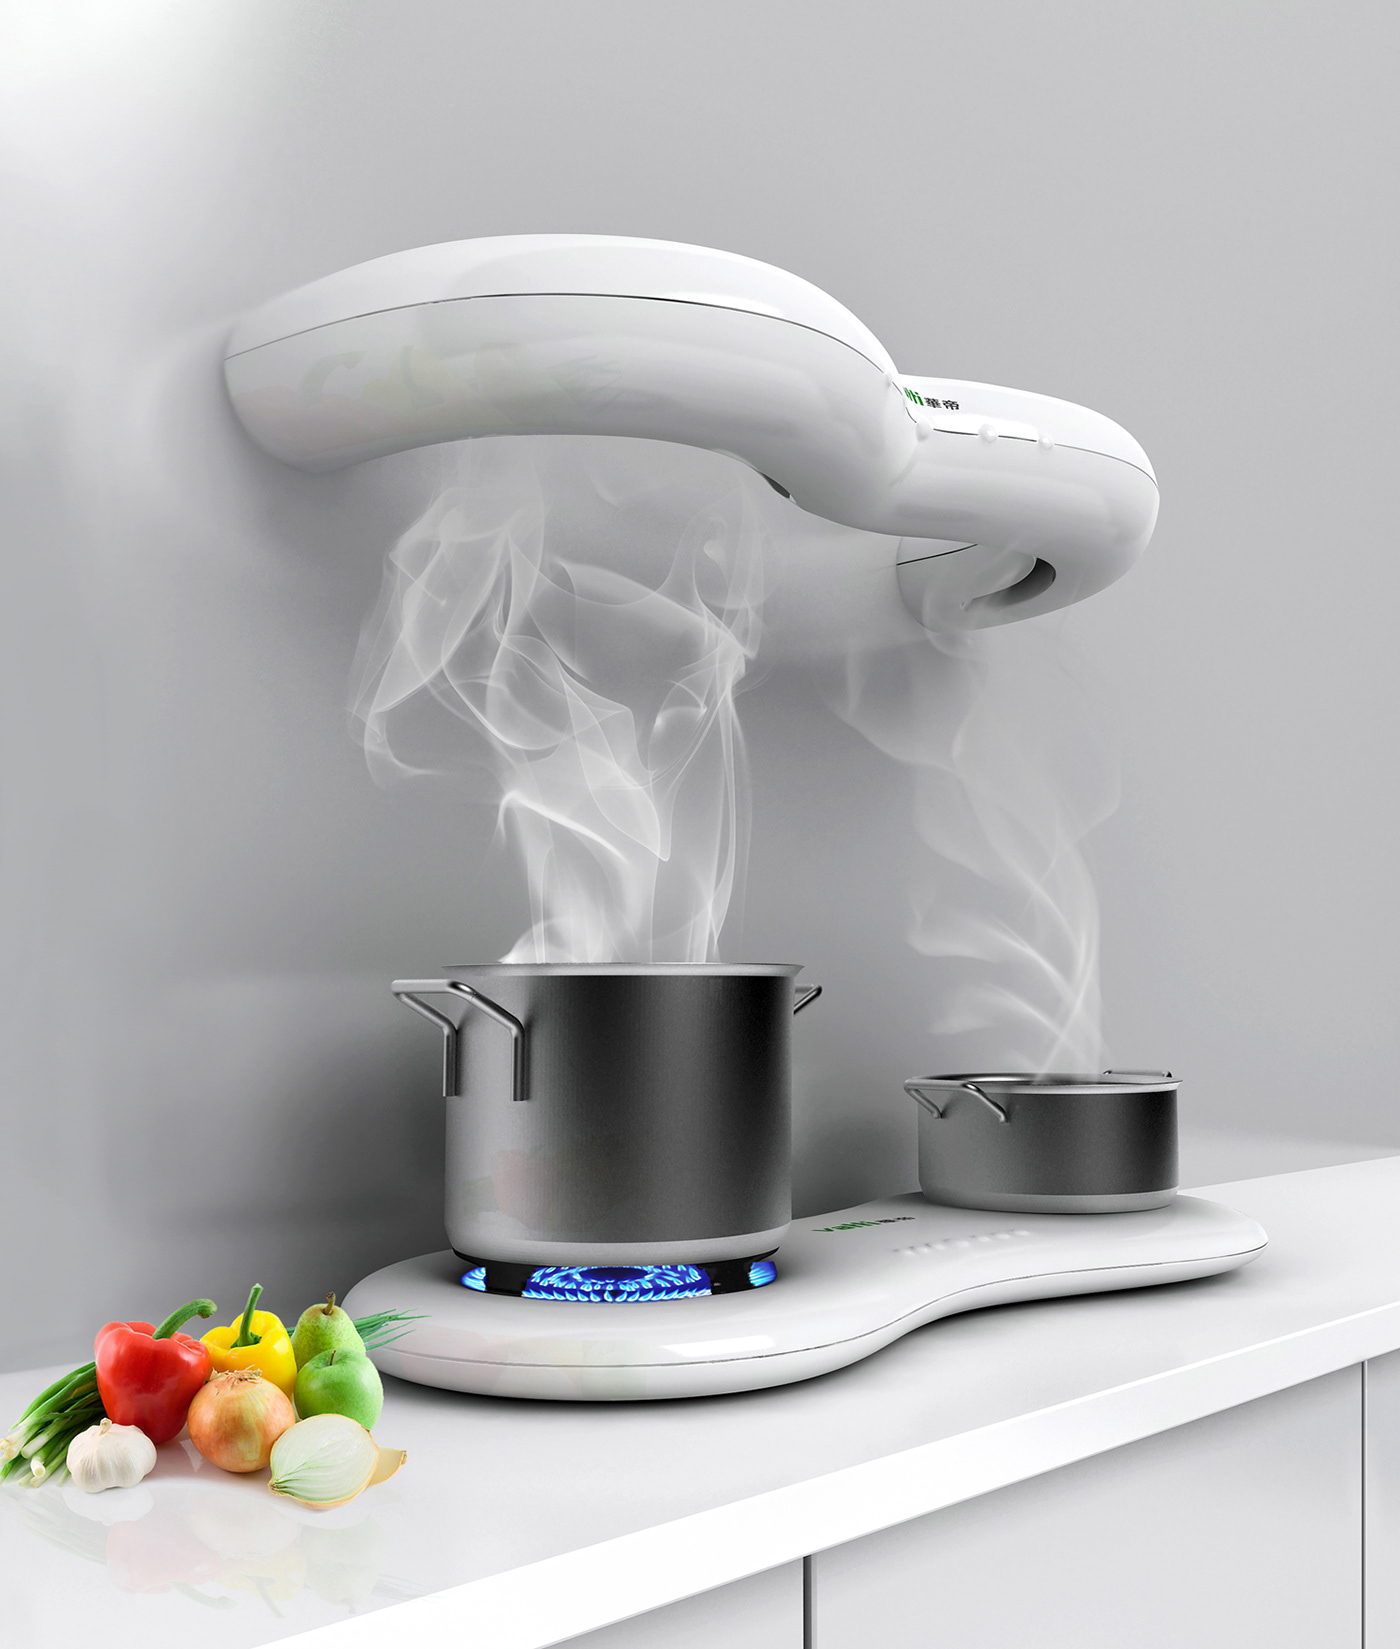 ventilator gas stove kitchen White